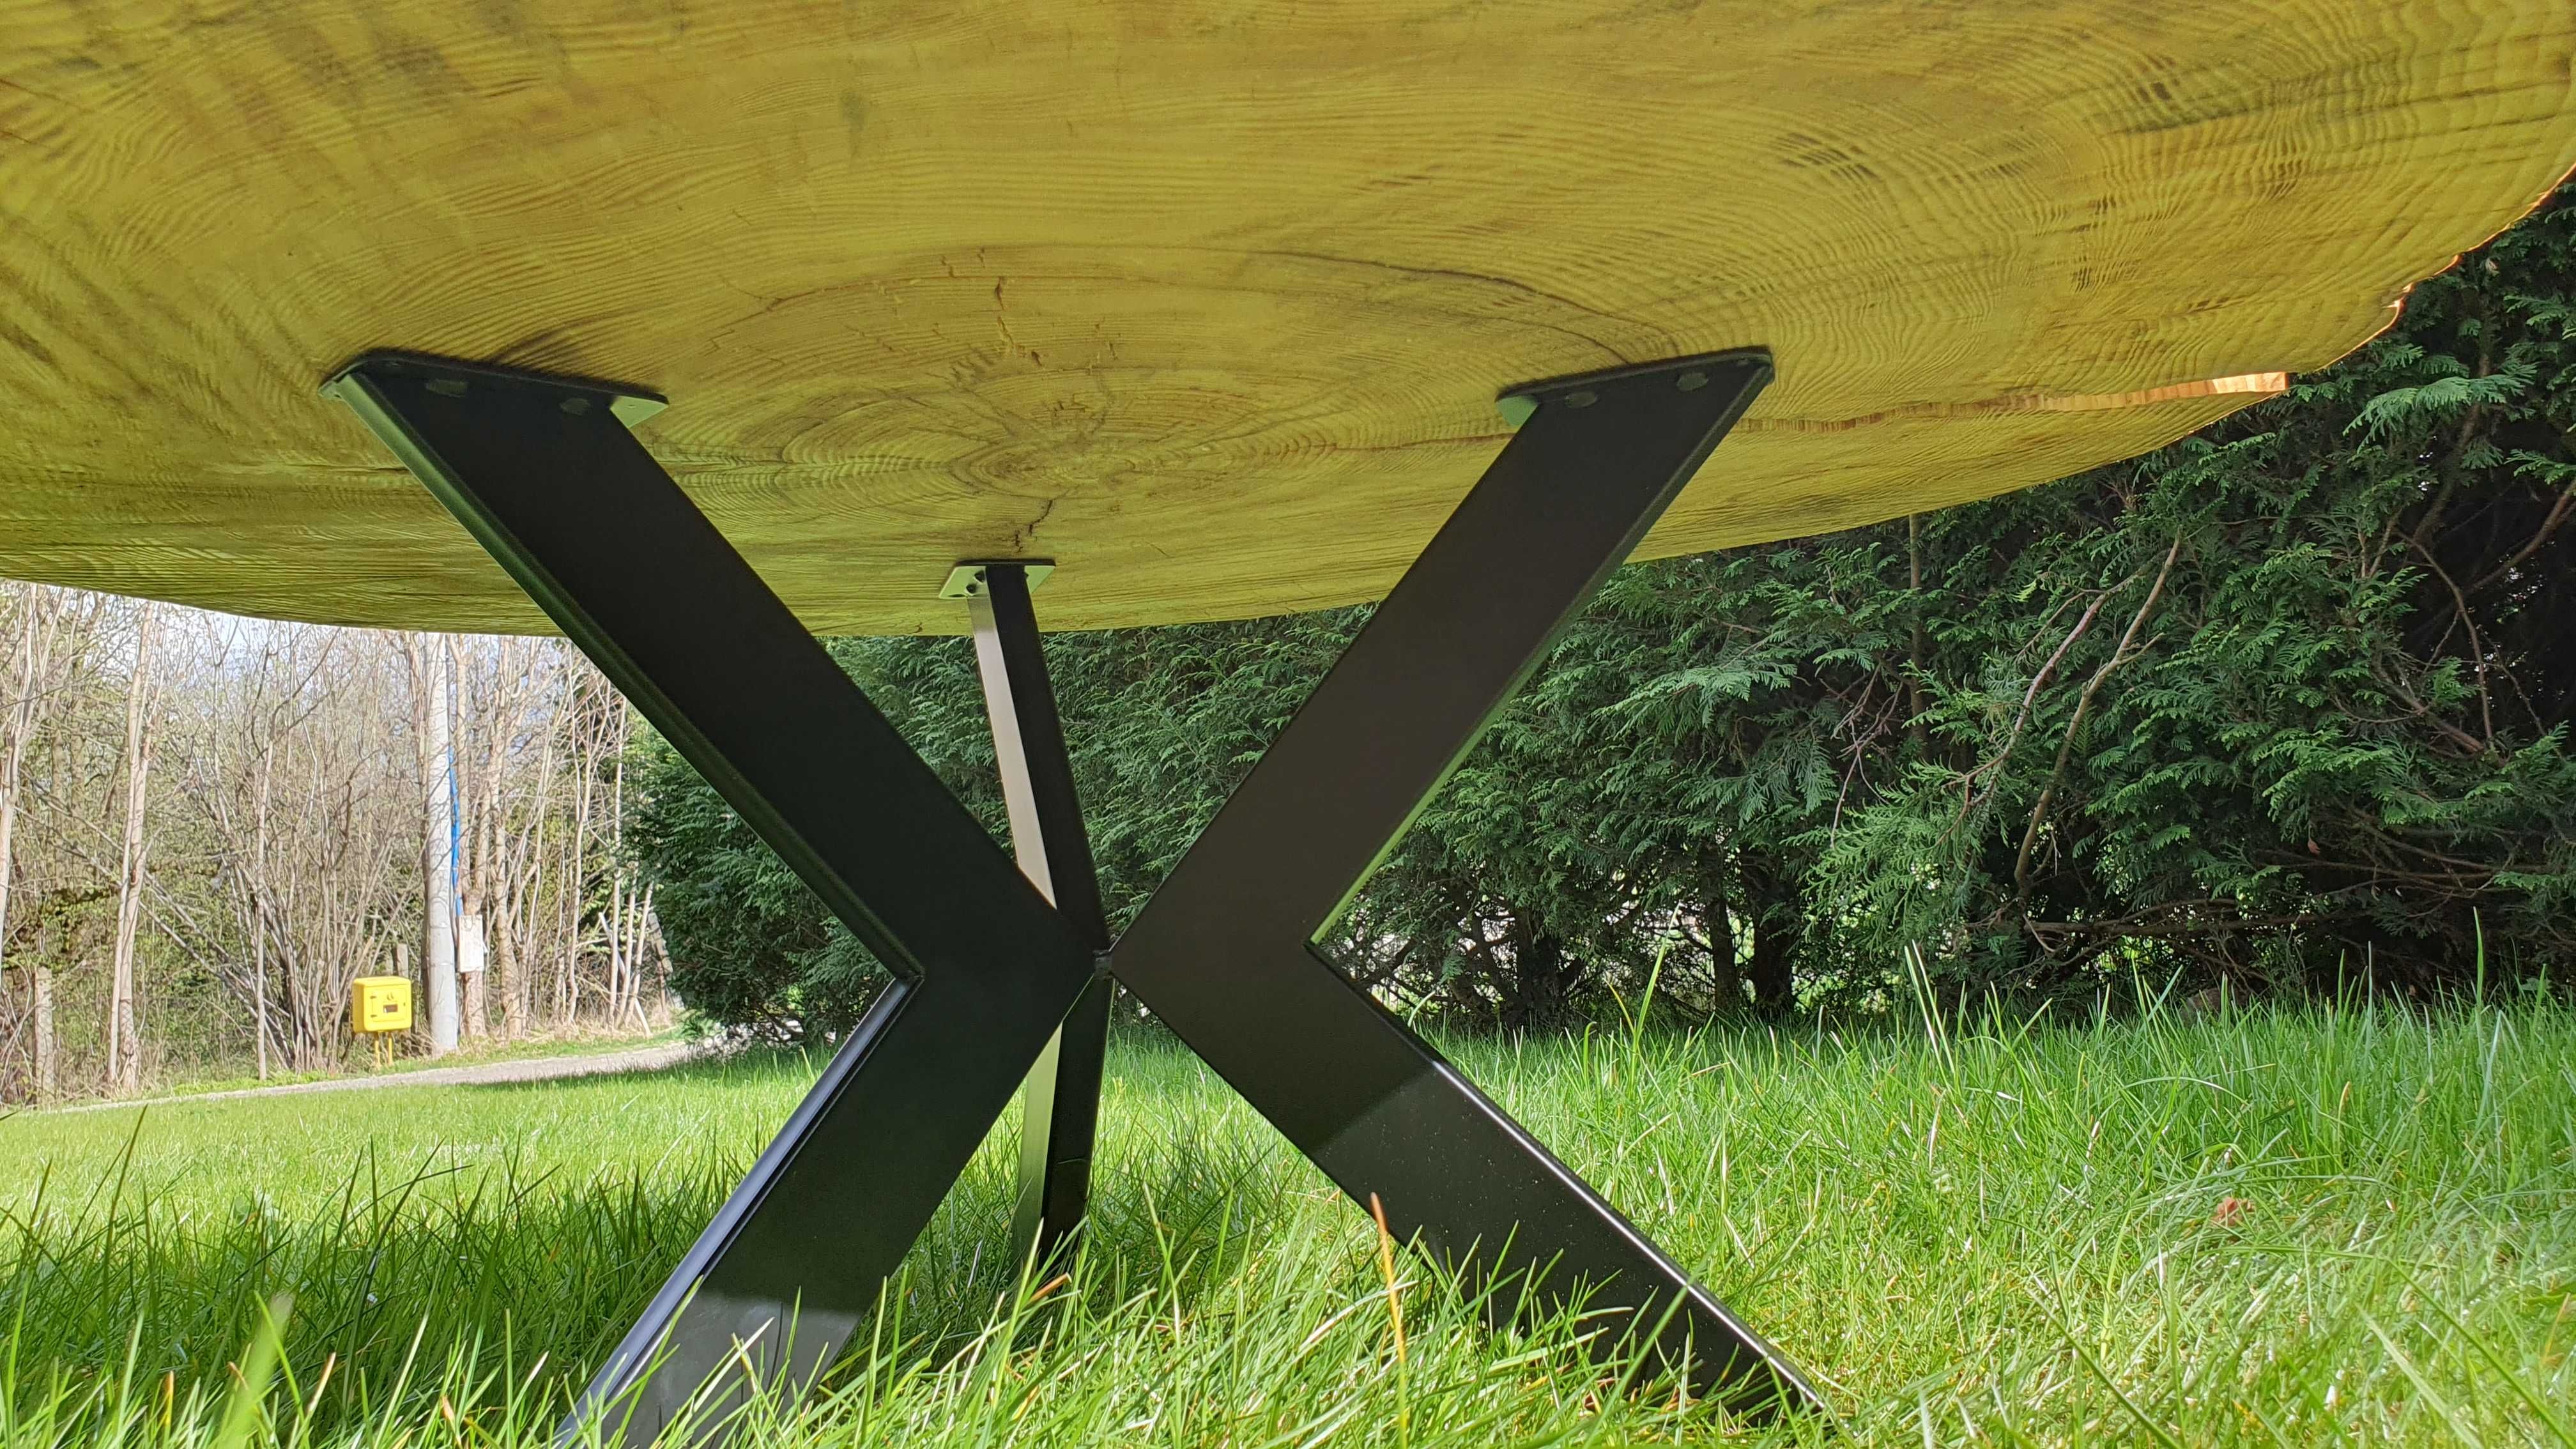 stół stolik kawowy ogrodowy plaster drewna duży rękodzieło góralskie